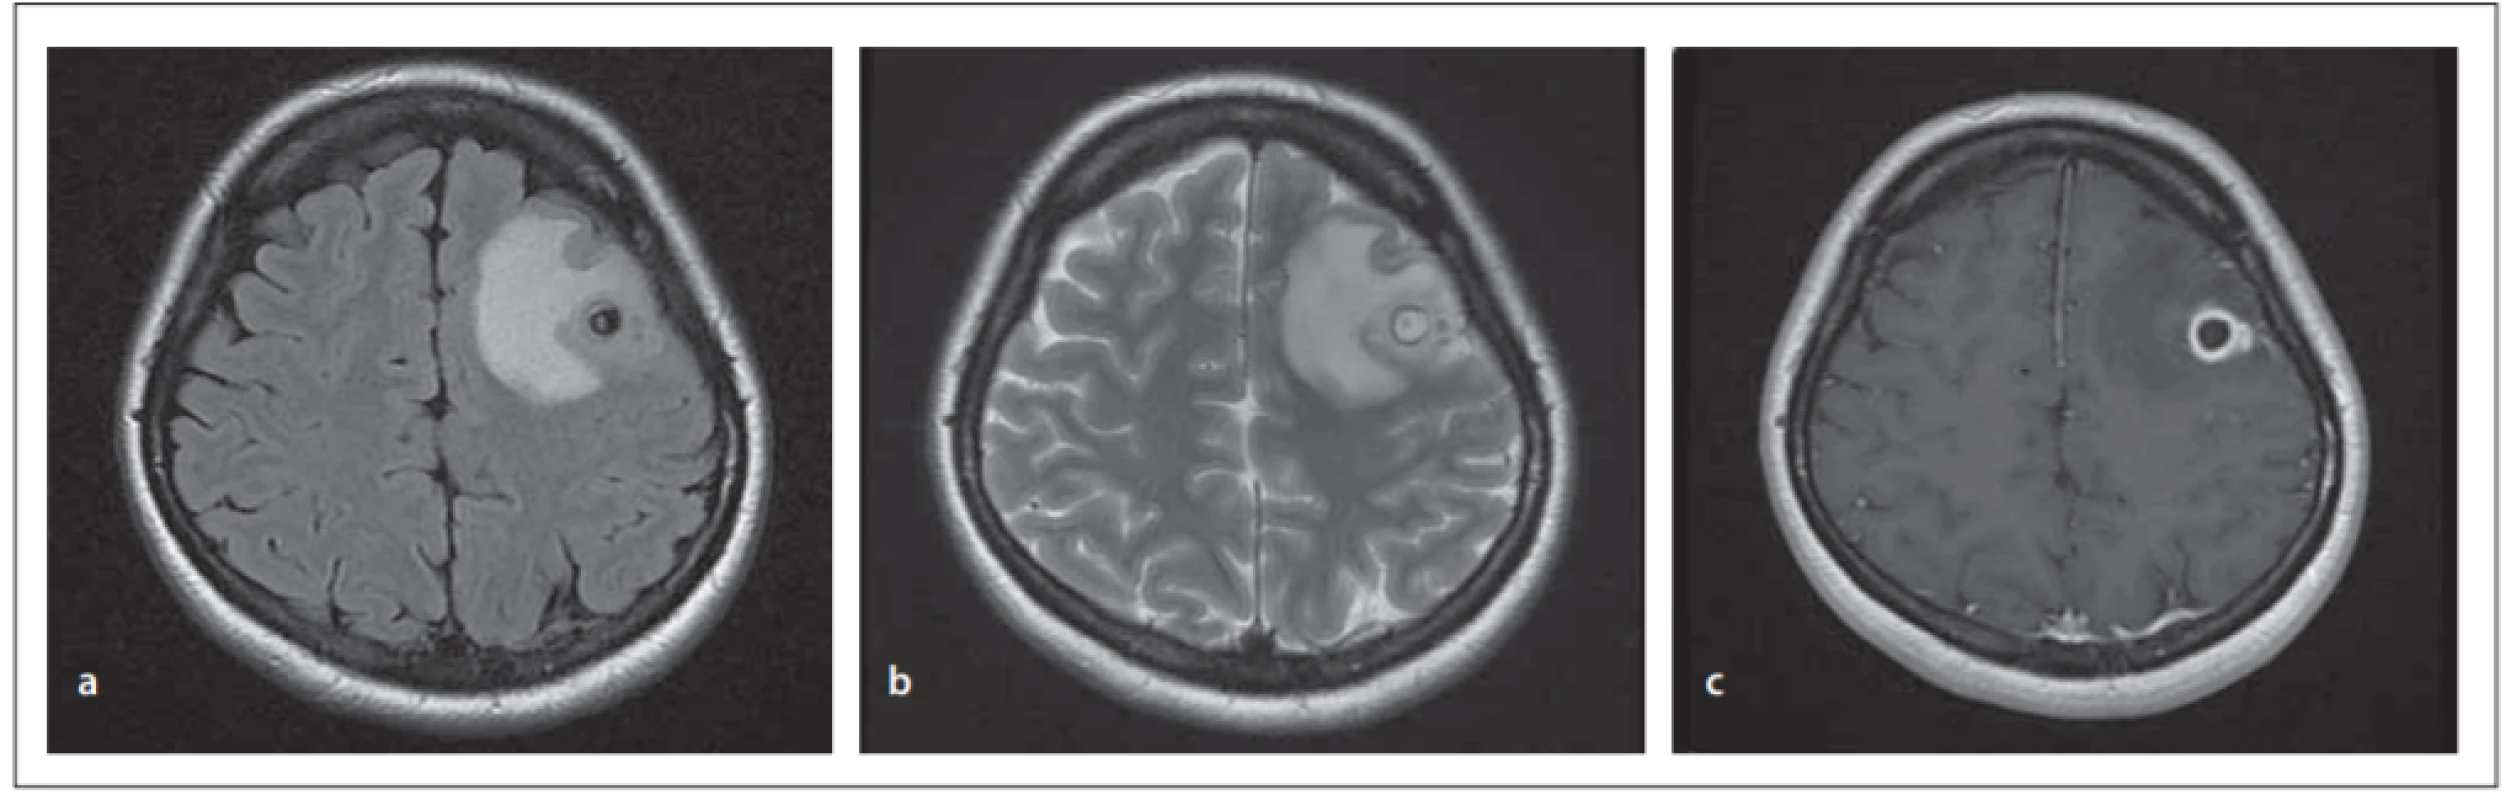 MRI of the brain, transverzal images. Cystic ring enhancing lesion in the left frontal region, with distinct perifocal oedema; most likely
a granular nodular stage of neurocysticercosis. (a) T1 weighted image; (b) T2 weighted image; (c) T1 weighted image with gadolinium.<br>
Obr. 2. MR mozku, transverzální řezy. Cystické ložisko frontálně vlevo s enhancujícím prstencem, s výrazným perifokálním edémem. Nejspíše granulárně nodulární stadium neurocystercerkózy. (a) T1 vážený snímek; (b) T2 vážený snímek; (c) T1 vážený snímek s gadoliniem.